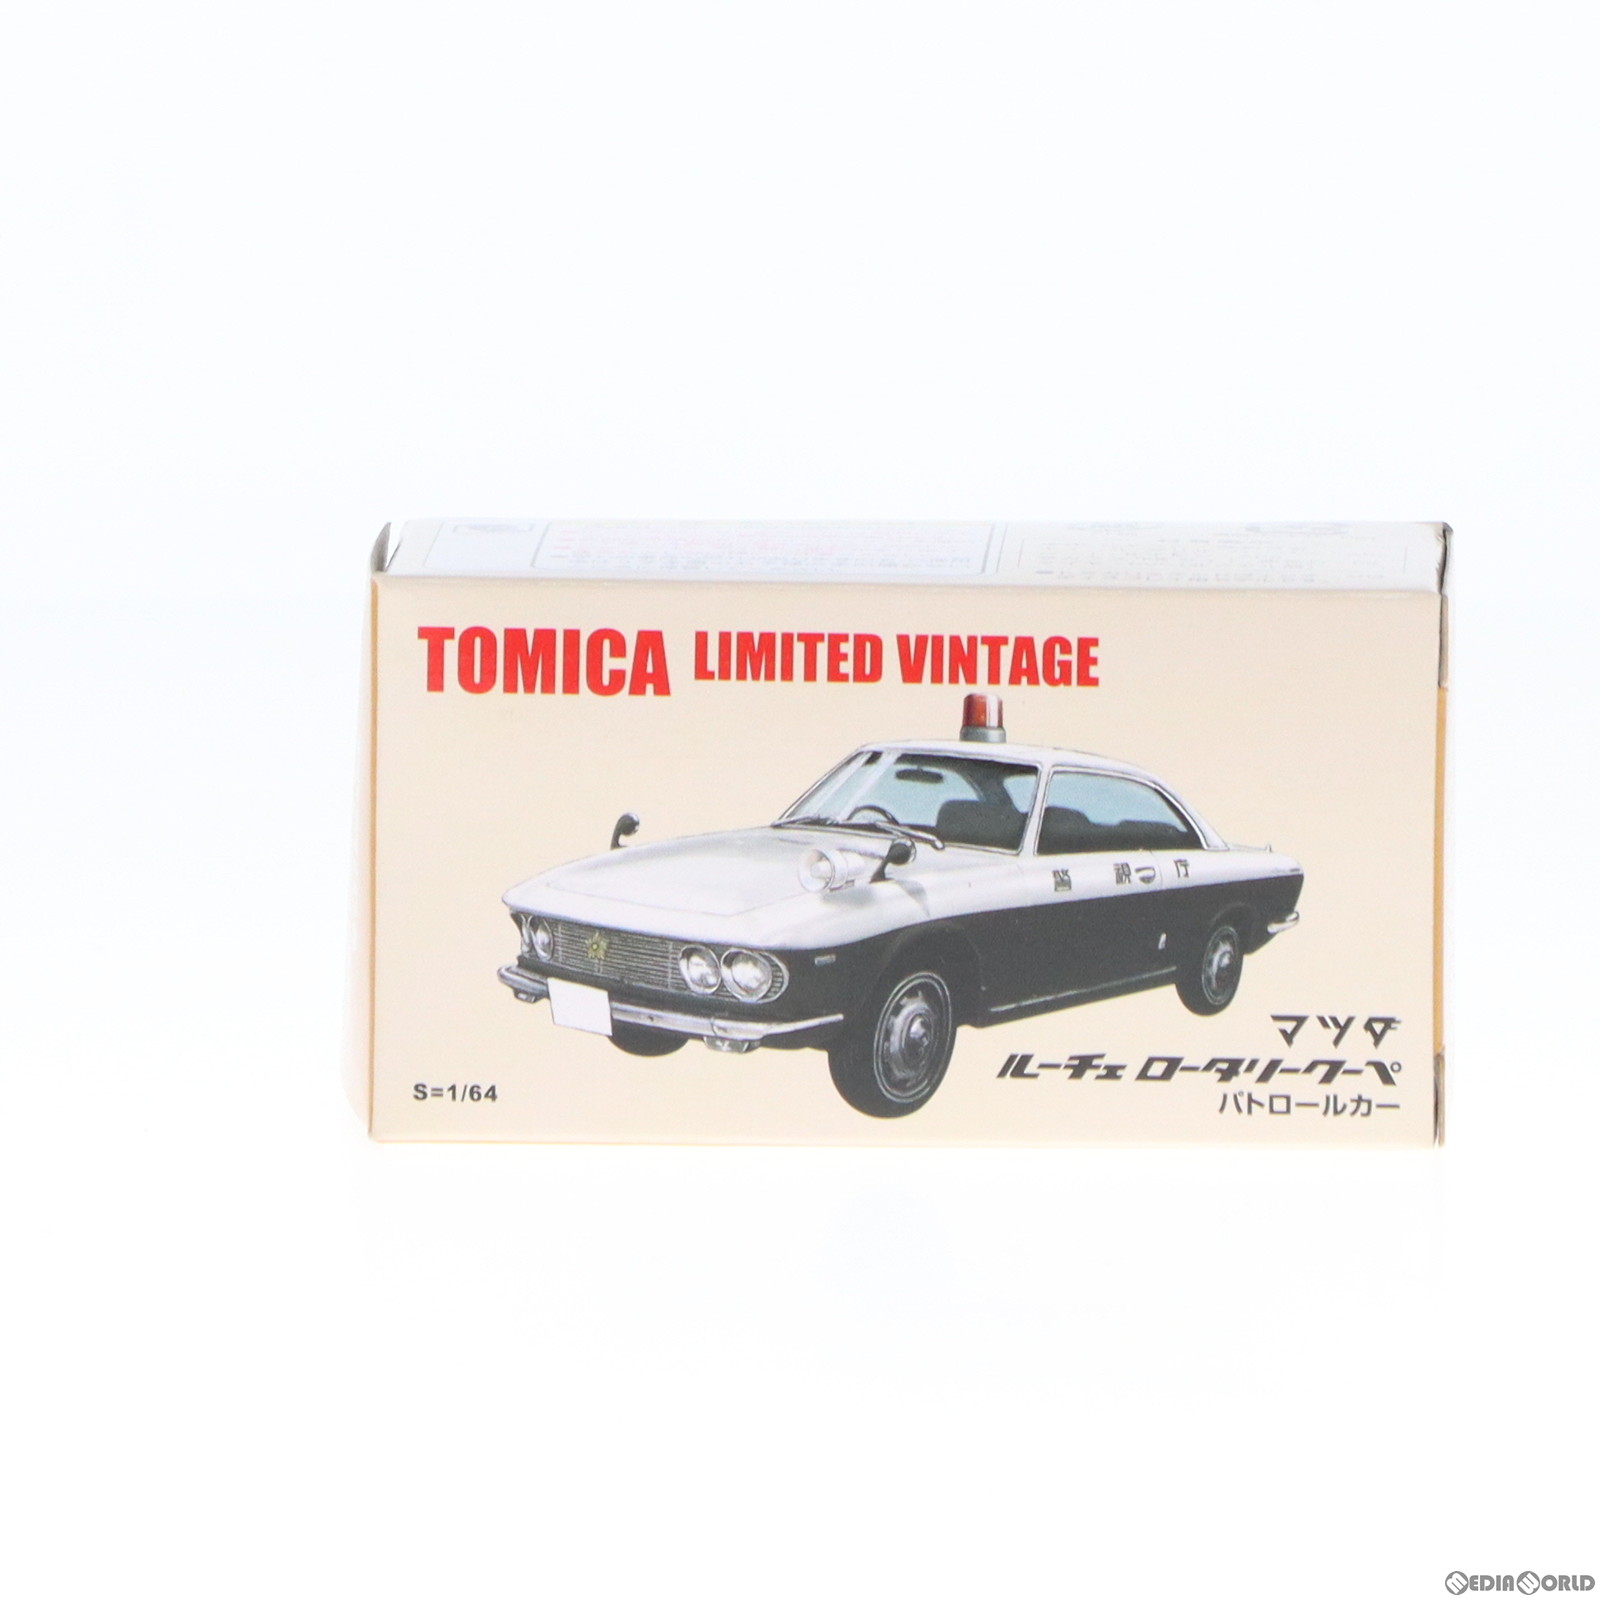 トミカリミテッドヴィンテージ 1/64 TLV-22 マツダ ルーチェ ロータリー クーペ パトロールカー(ホワイト×ブラック) トミカショップオリジナル 完成品 ミニカー(252771) TOMYTEC(トミーテック)(20101231)